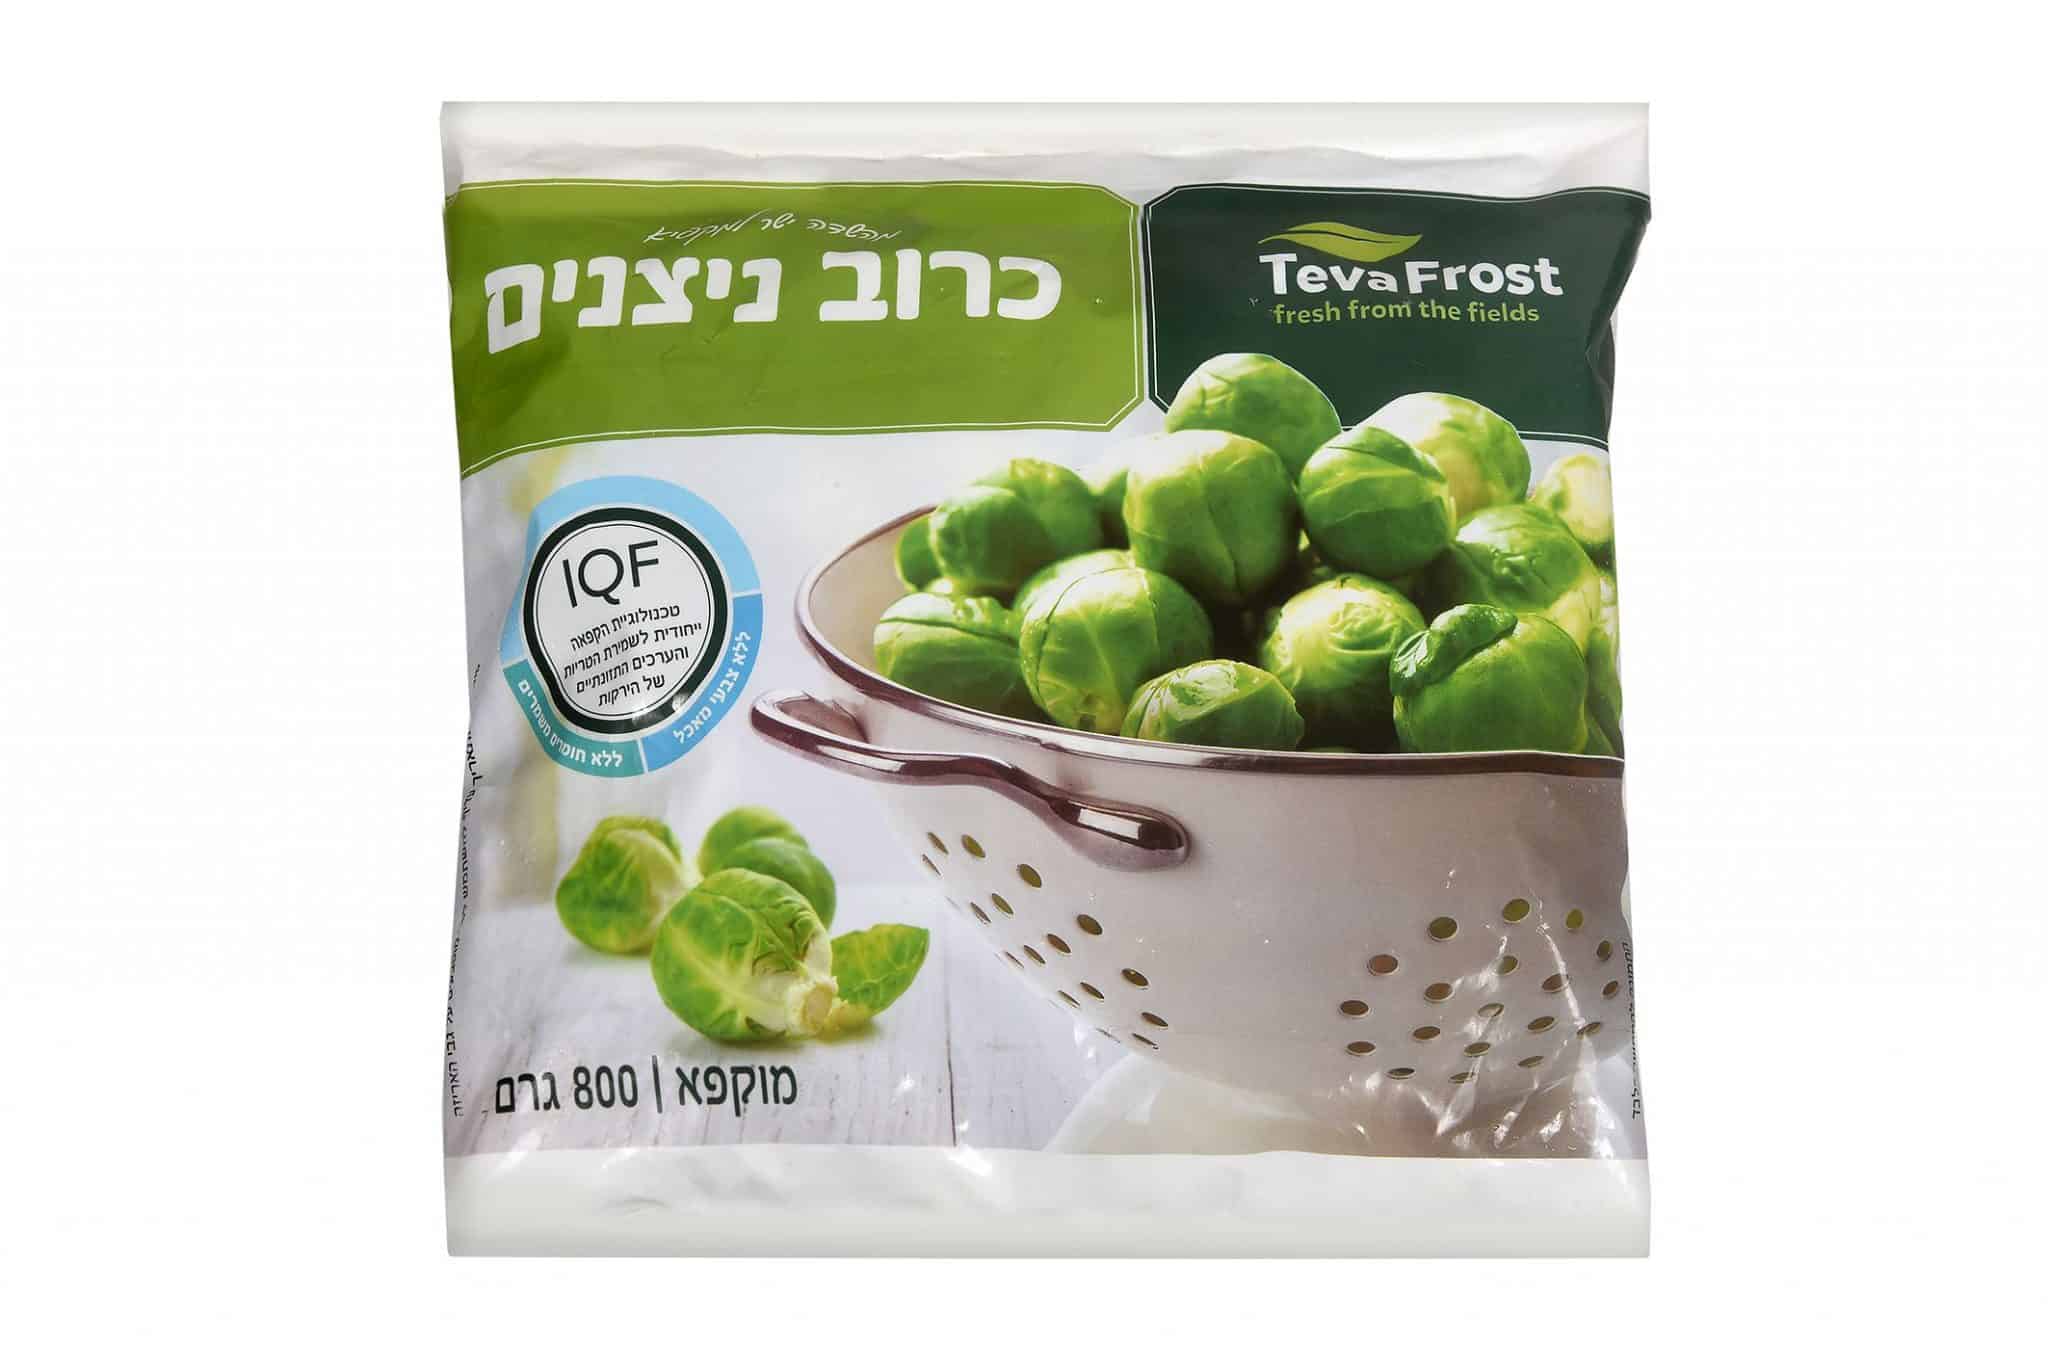 הקהל בישראל מעריך מוצרי מזון איכותיים ומיוחדים ממותגים בינלאומיים מובילים בתחומם. צילום אסף לוי